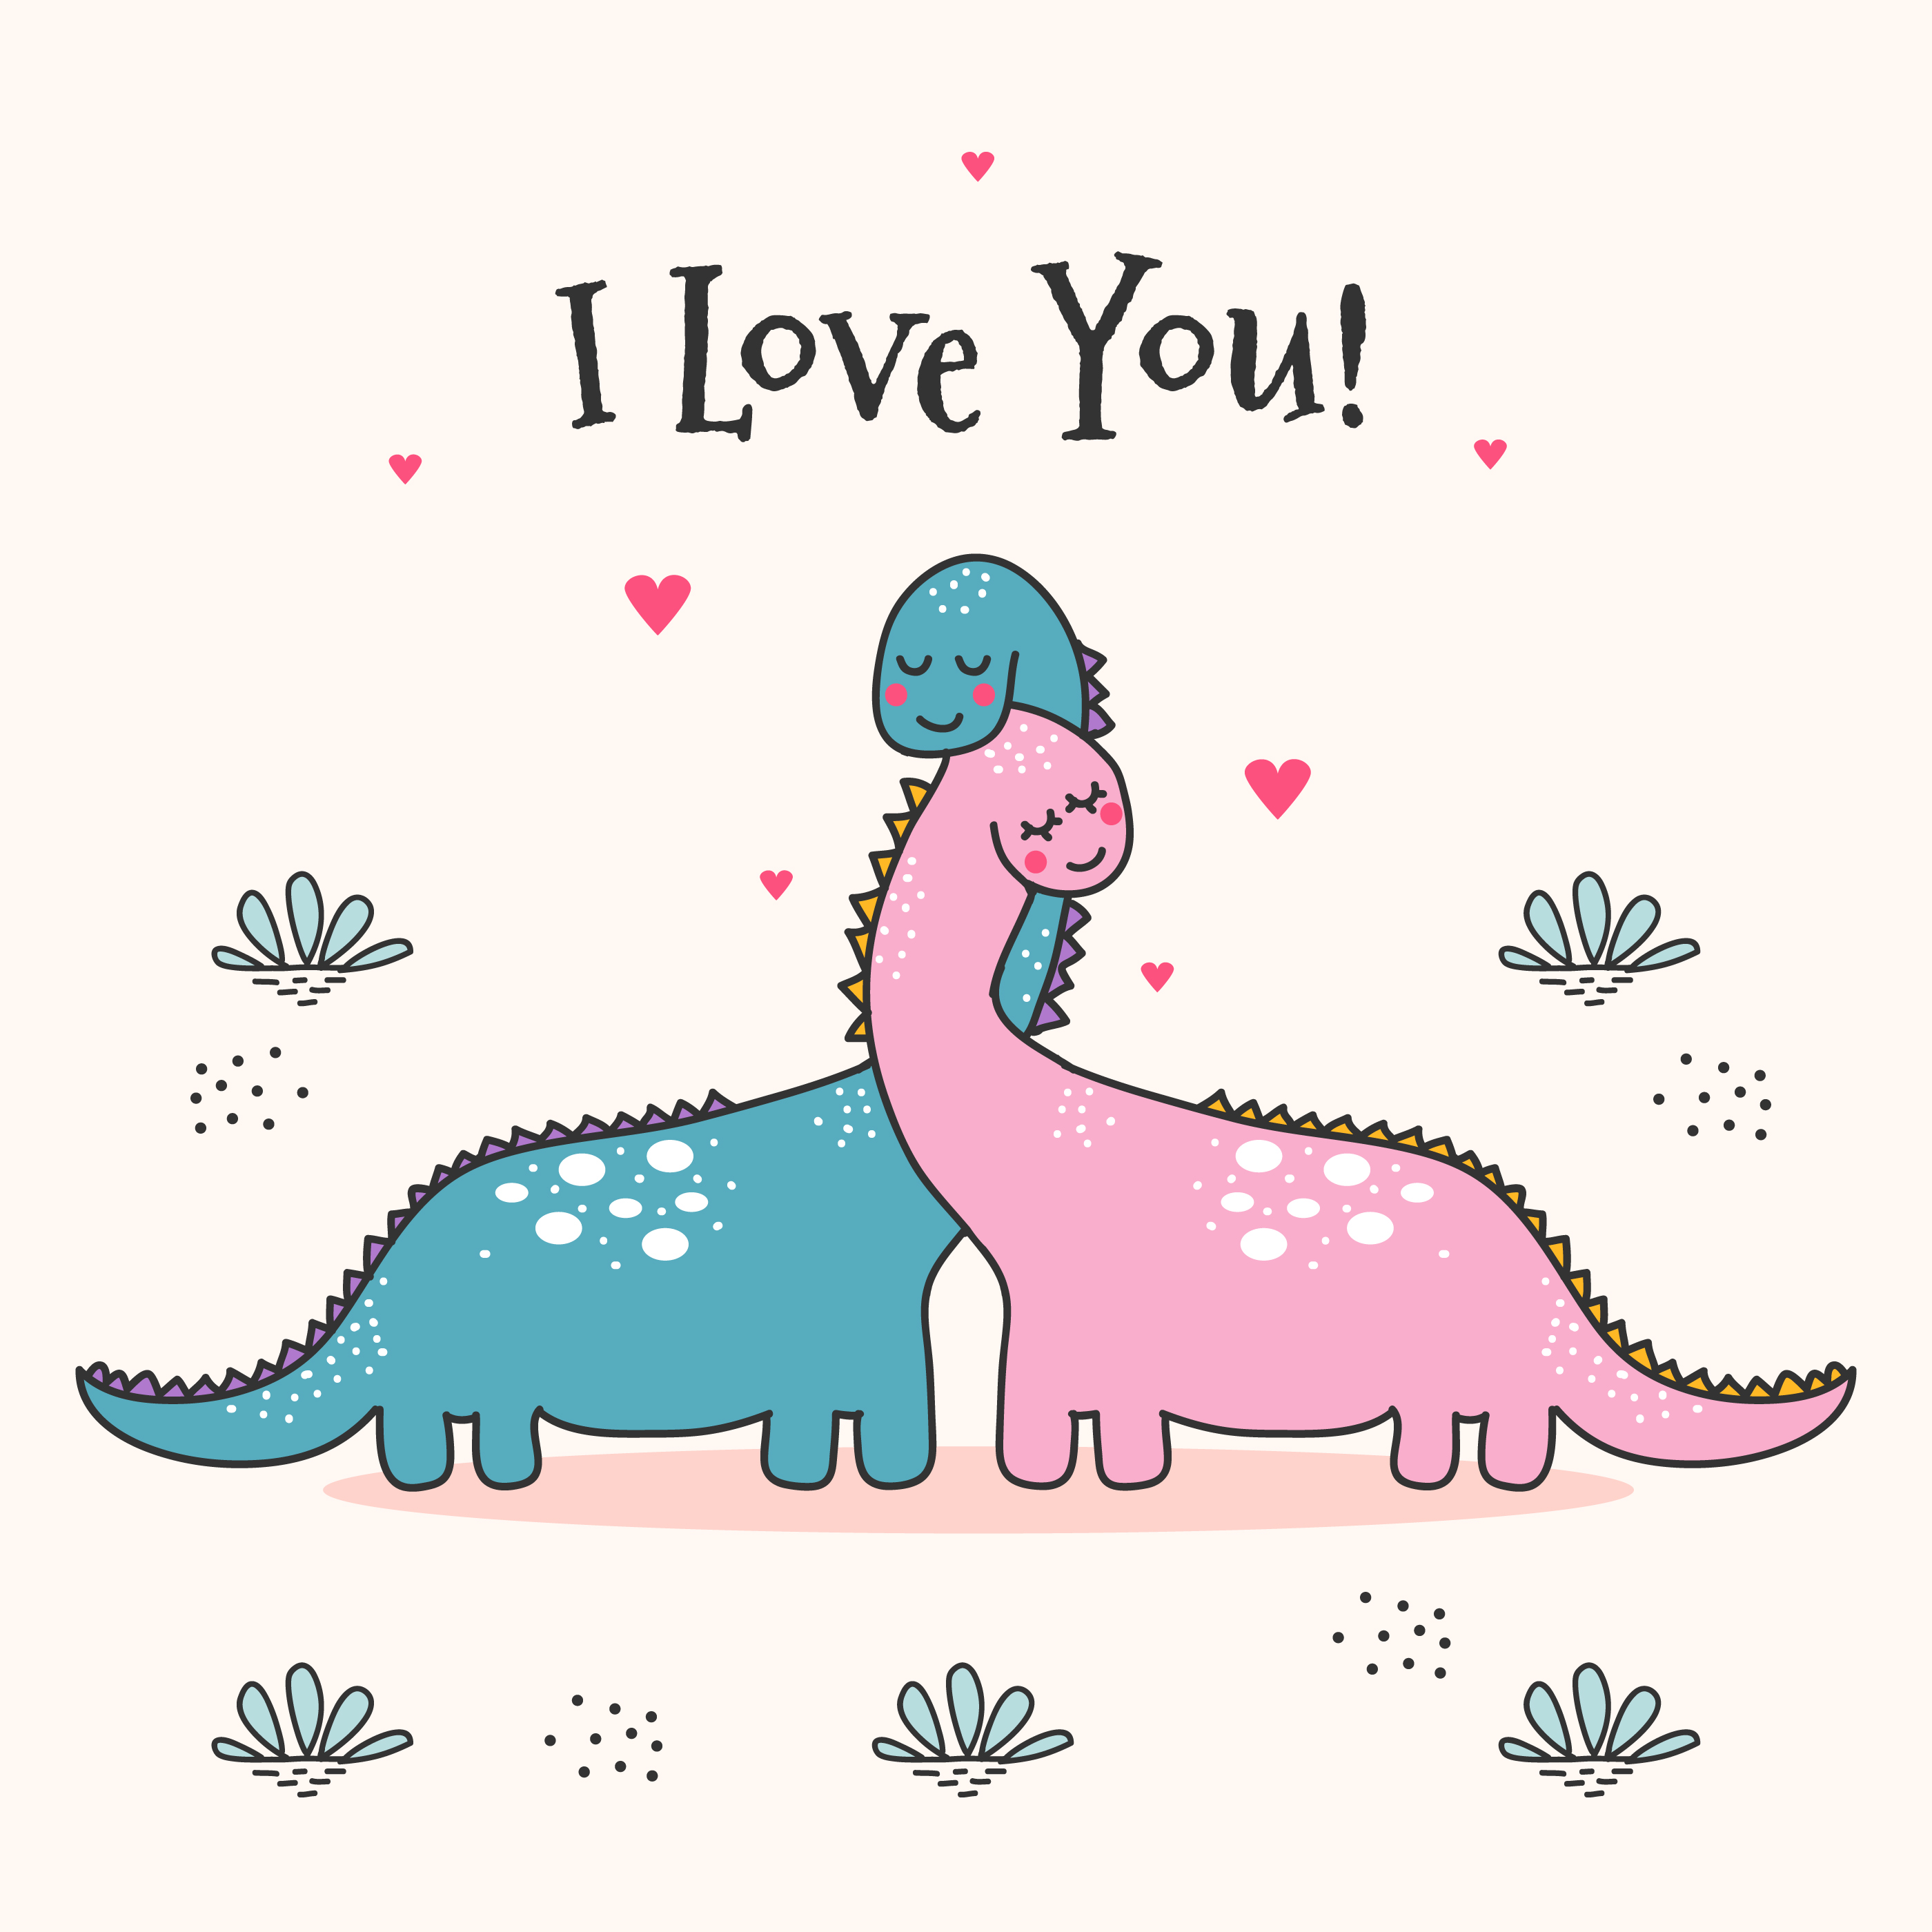 I love you dinosaur meme